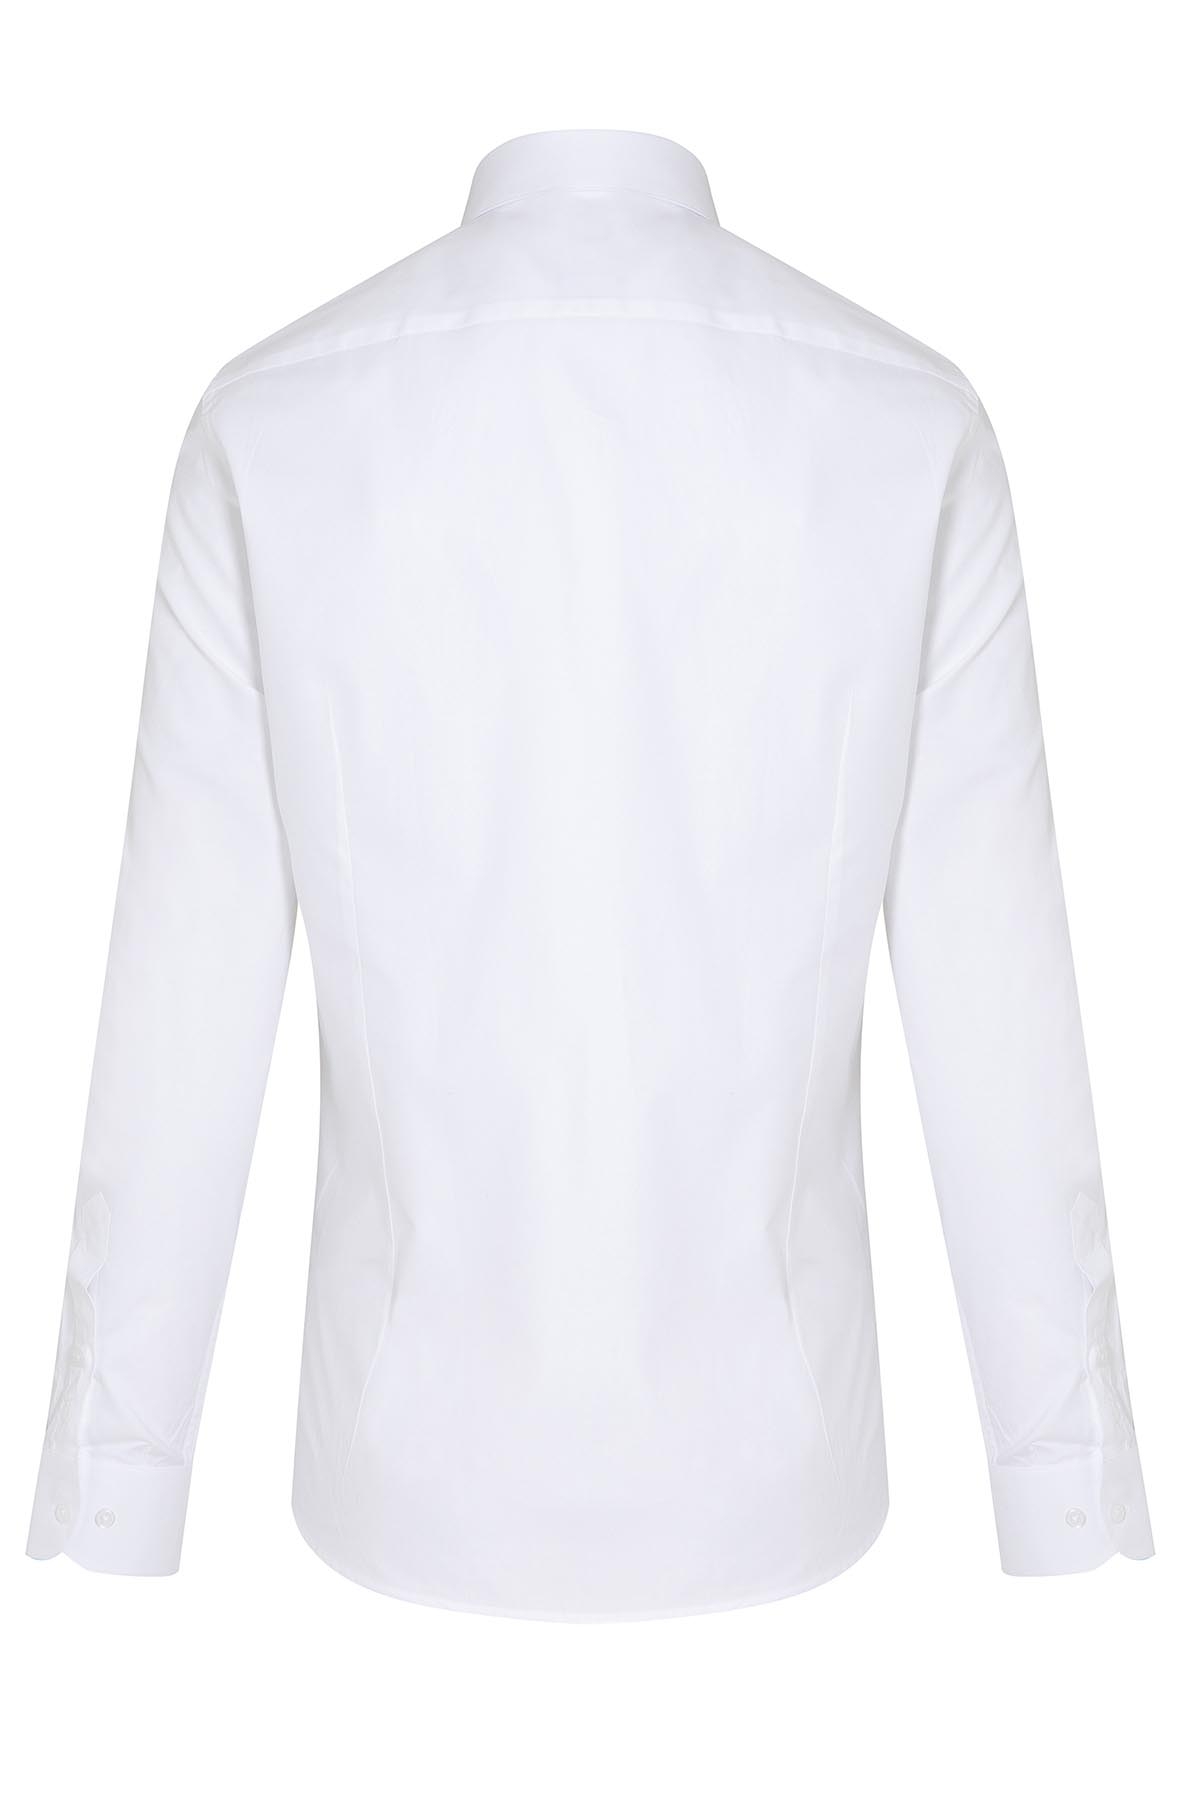 Beyaz Slim Fit Desenli 100% Pamuk Açık İtalyan Yaka Uzun Kollu Klasik Gömlek